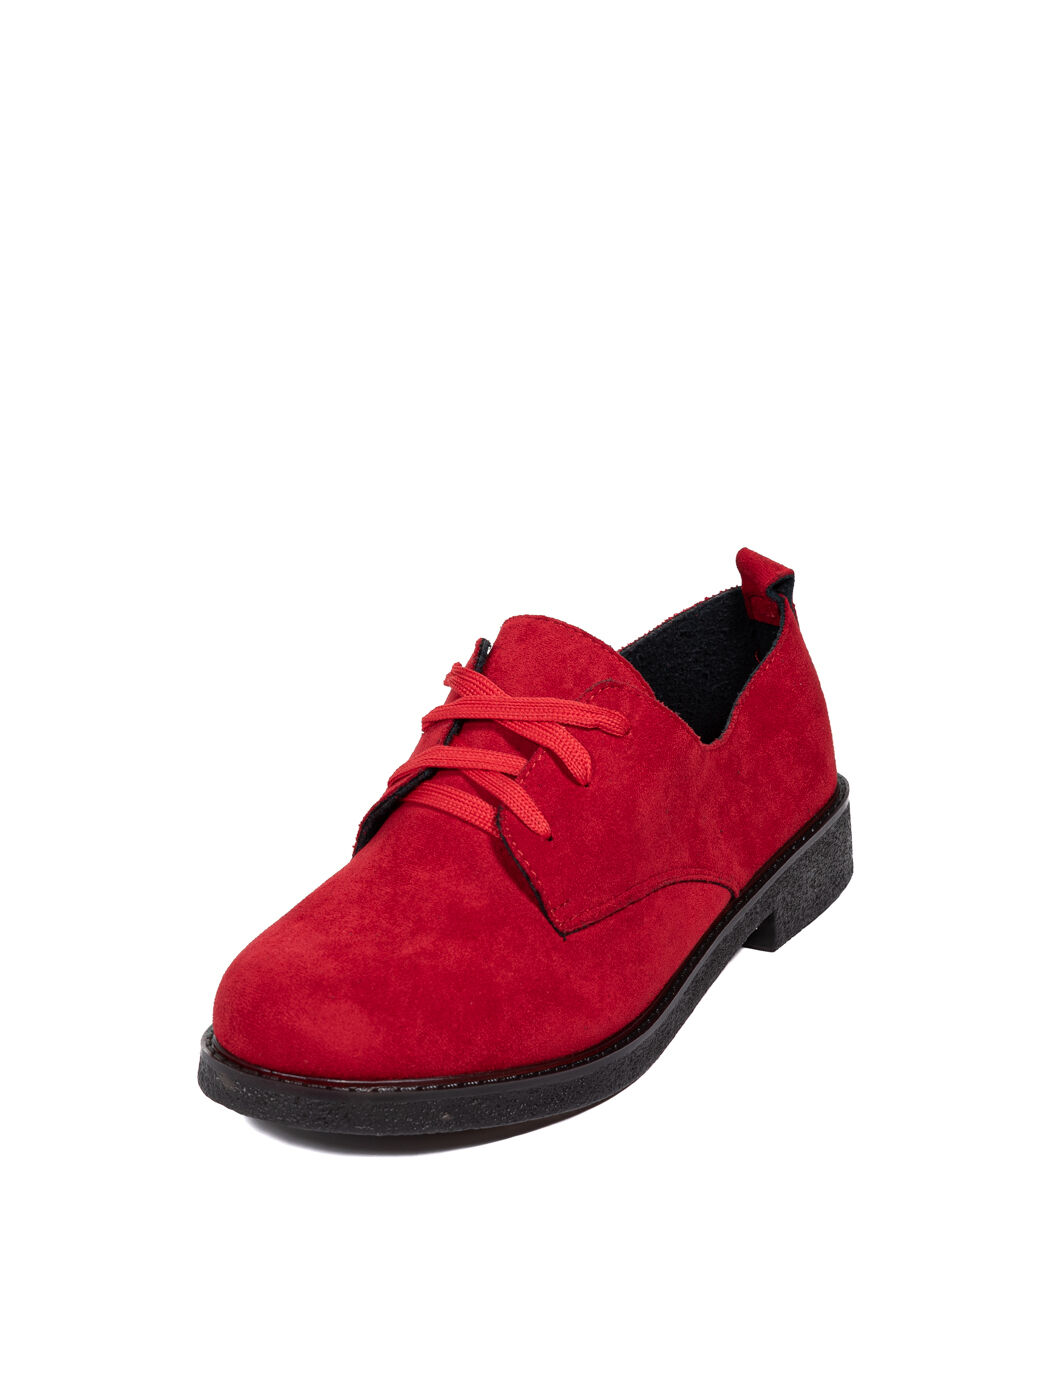 Туфли Oxfords женские красные экозамша каблук устойчивый демисезон 10M вид 0